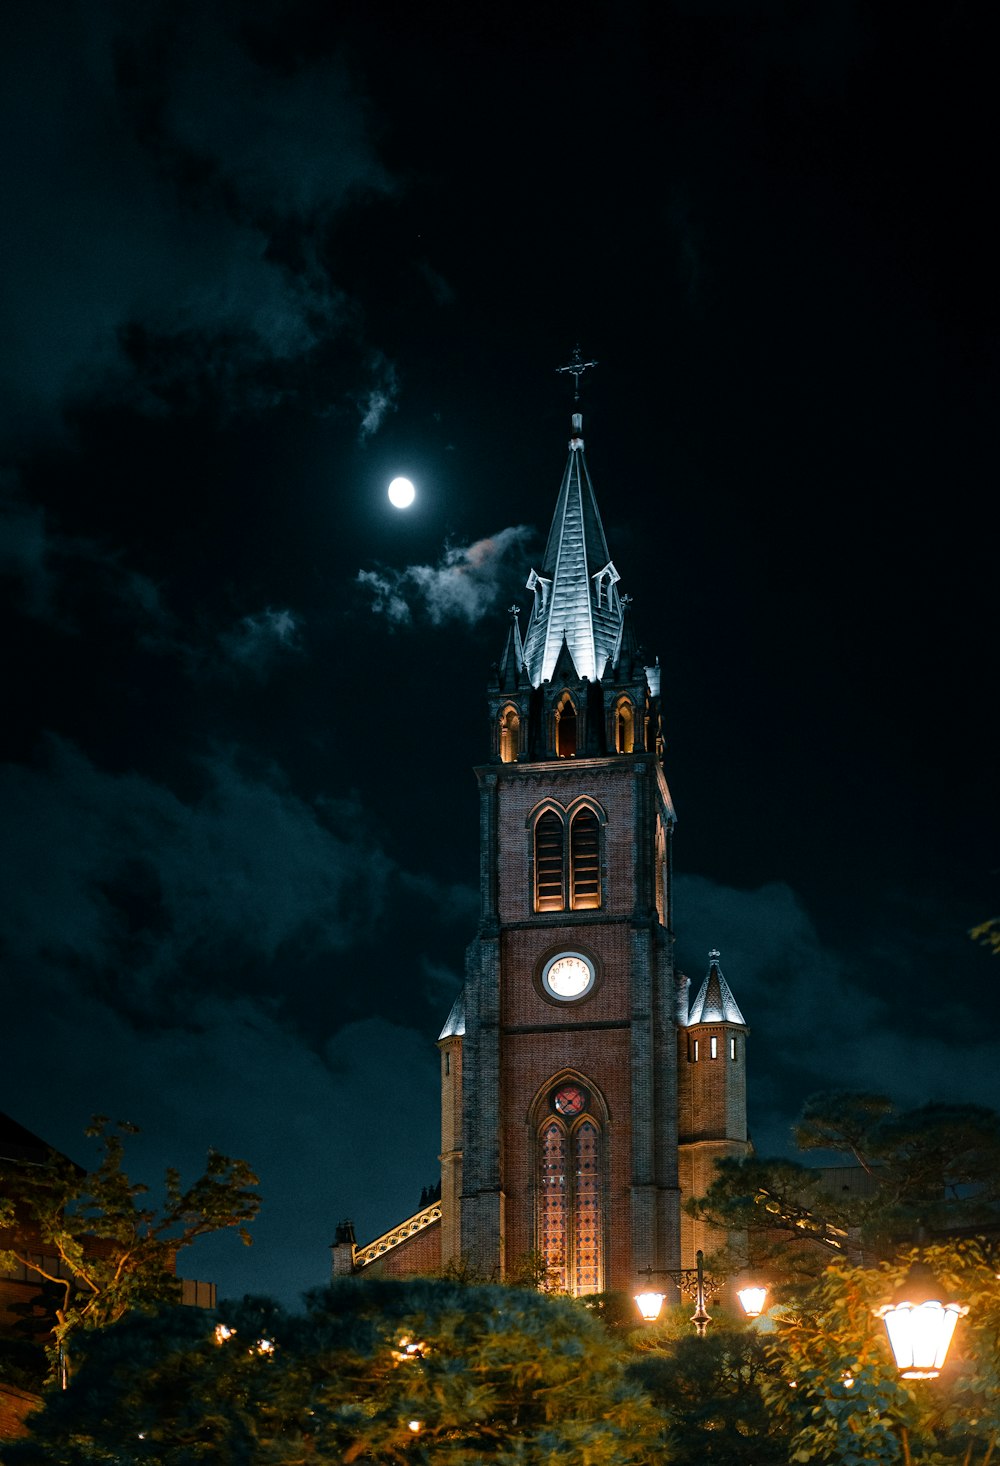 a clock tower at night